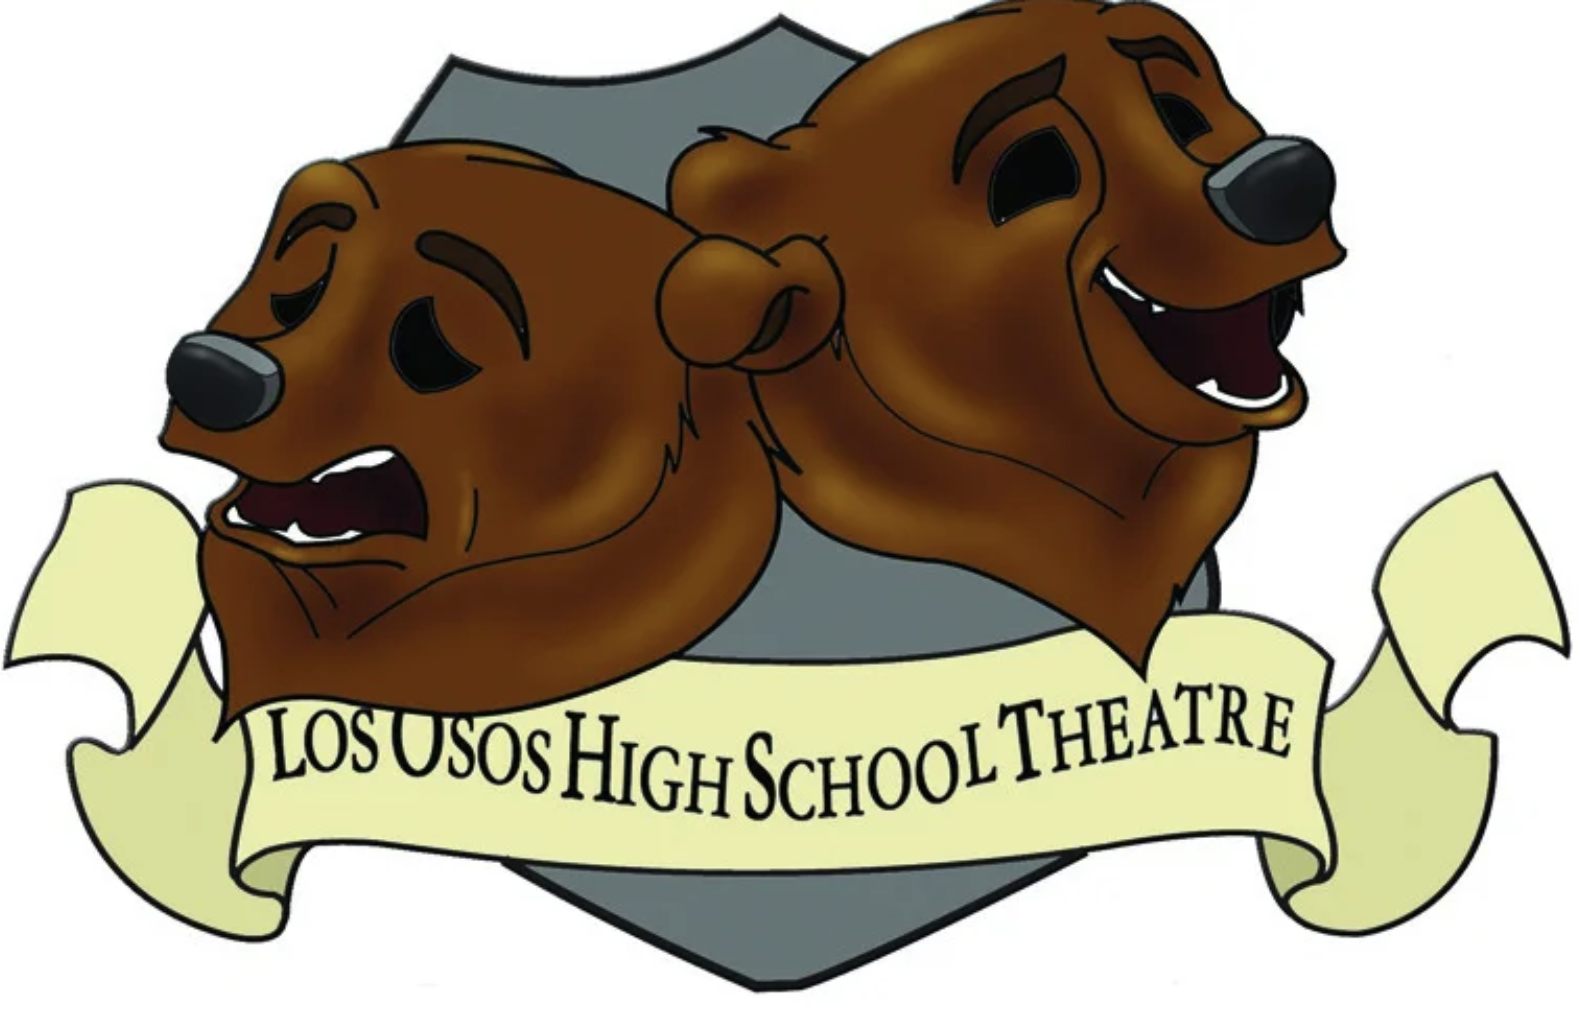 Los Osos High School Theatre logo